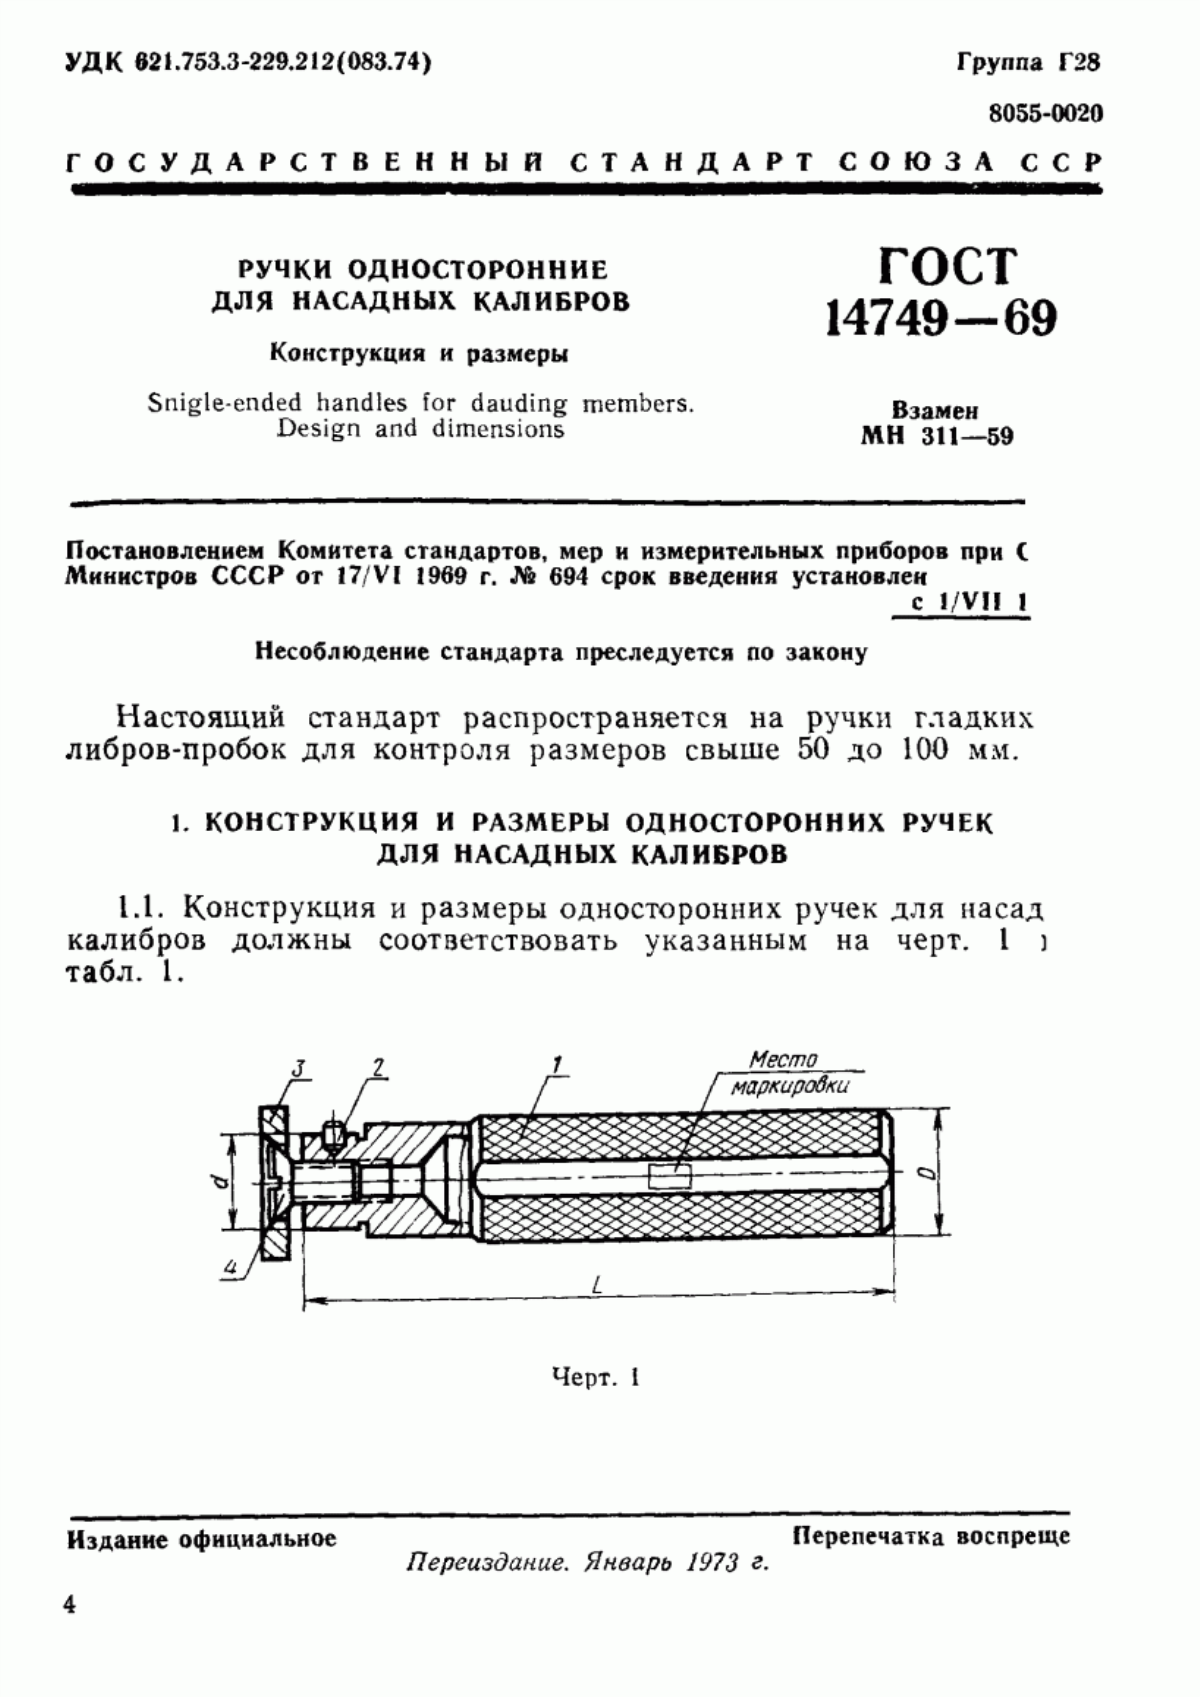 ГОСТ 14749-69 Ручки односторонние для насадных калибров. Конструкция и размеры